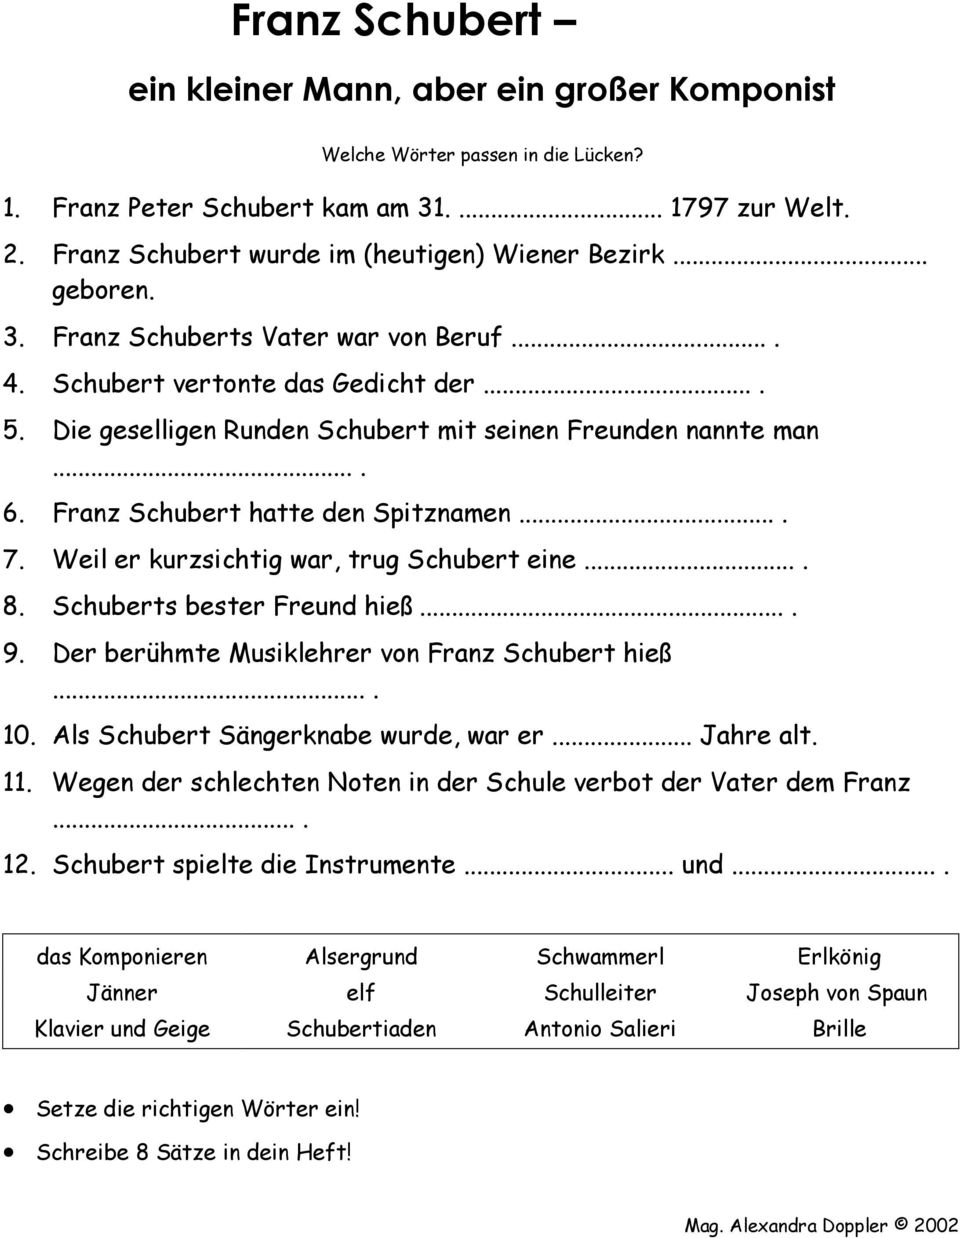 Weil er kurzsichtig war, trug Schubert eine.... 8. Schuberts bester Freund hieß.... 9. Der berühmte Musiklehrer von Franz Schubert hieß.... 10. Als Schubert Sängerknabe wurde, war er... Jahre alt. 11.